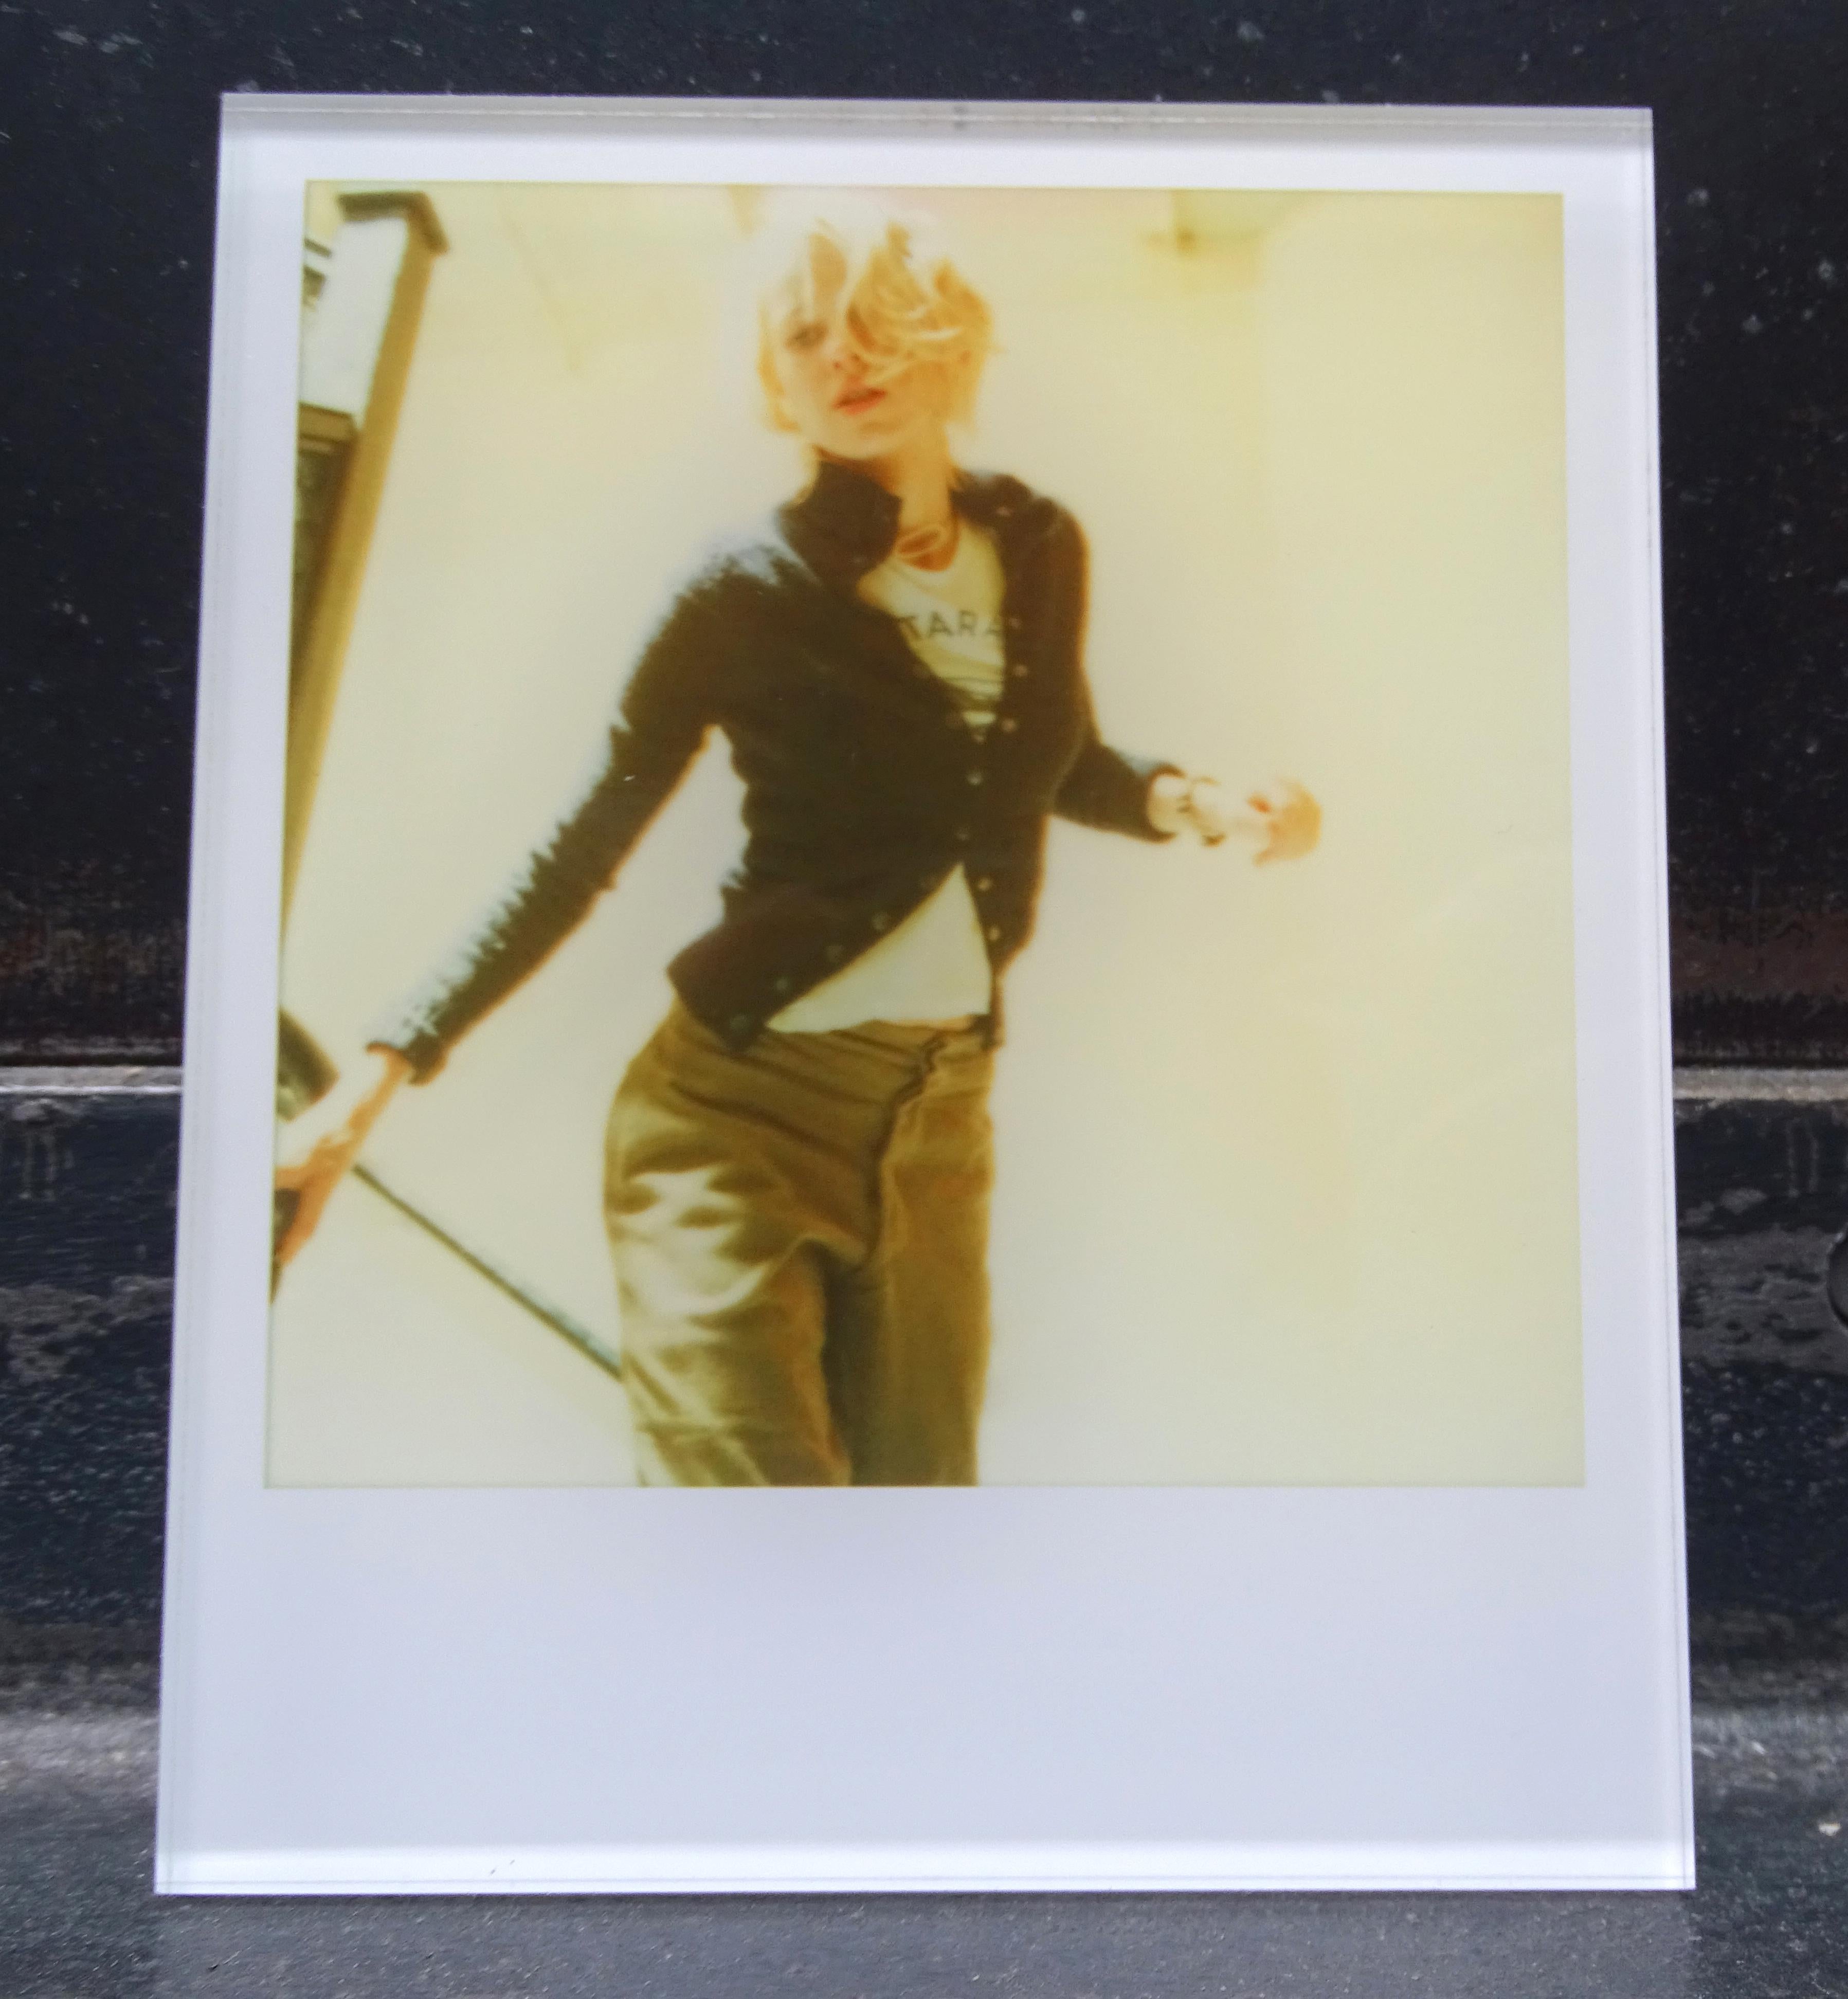 Die Minis von Stefanie Schneider
Lila rennt die Treppe hinunter (Stay) - mit Naomi Watts, 2006
verso signiert und Signaturmarke
Digitale Lambda-Farbfotografien auf der Grundlage eines Polaroids

aus dem Film 'Stay' von Marc Forster, mit Ewan